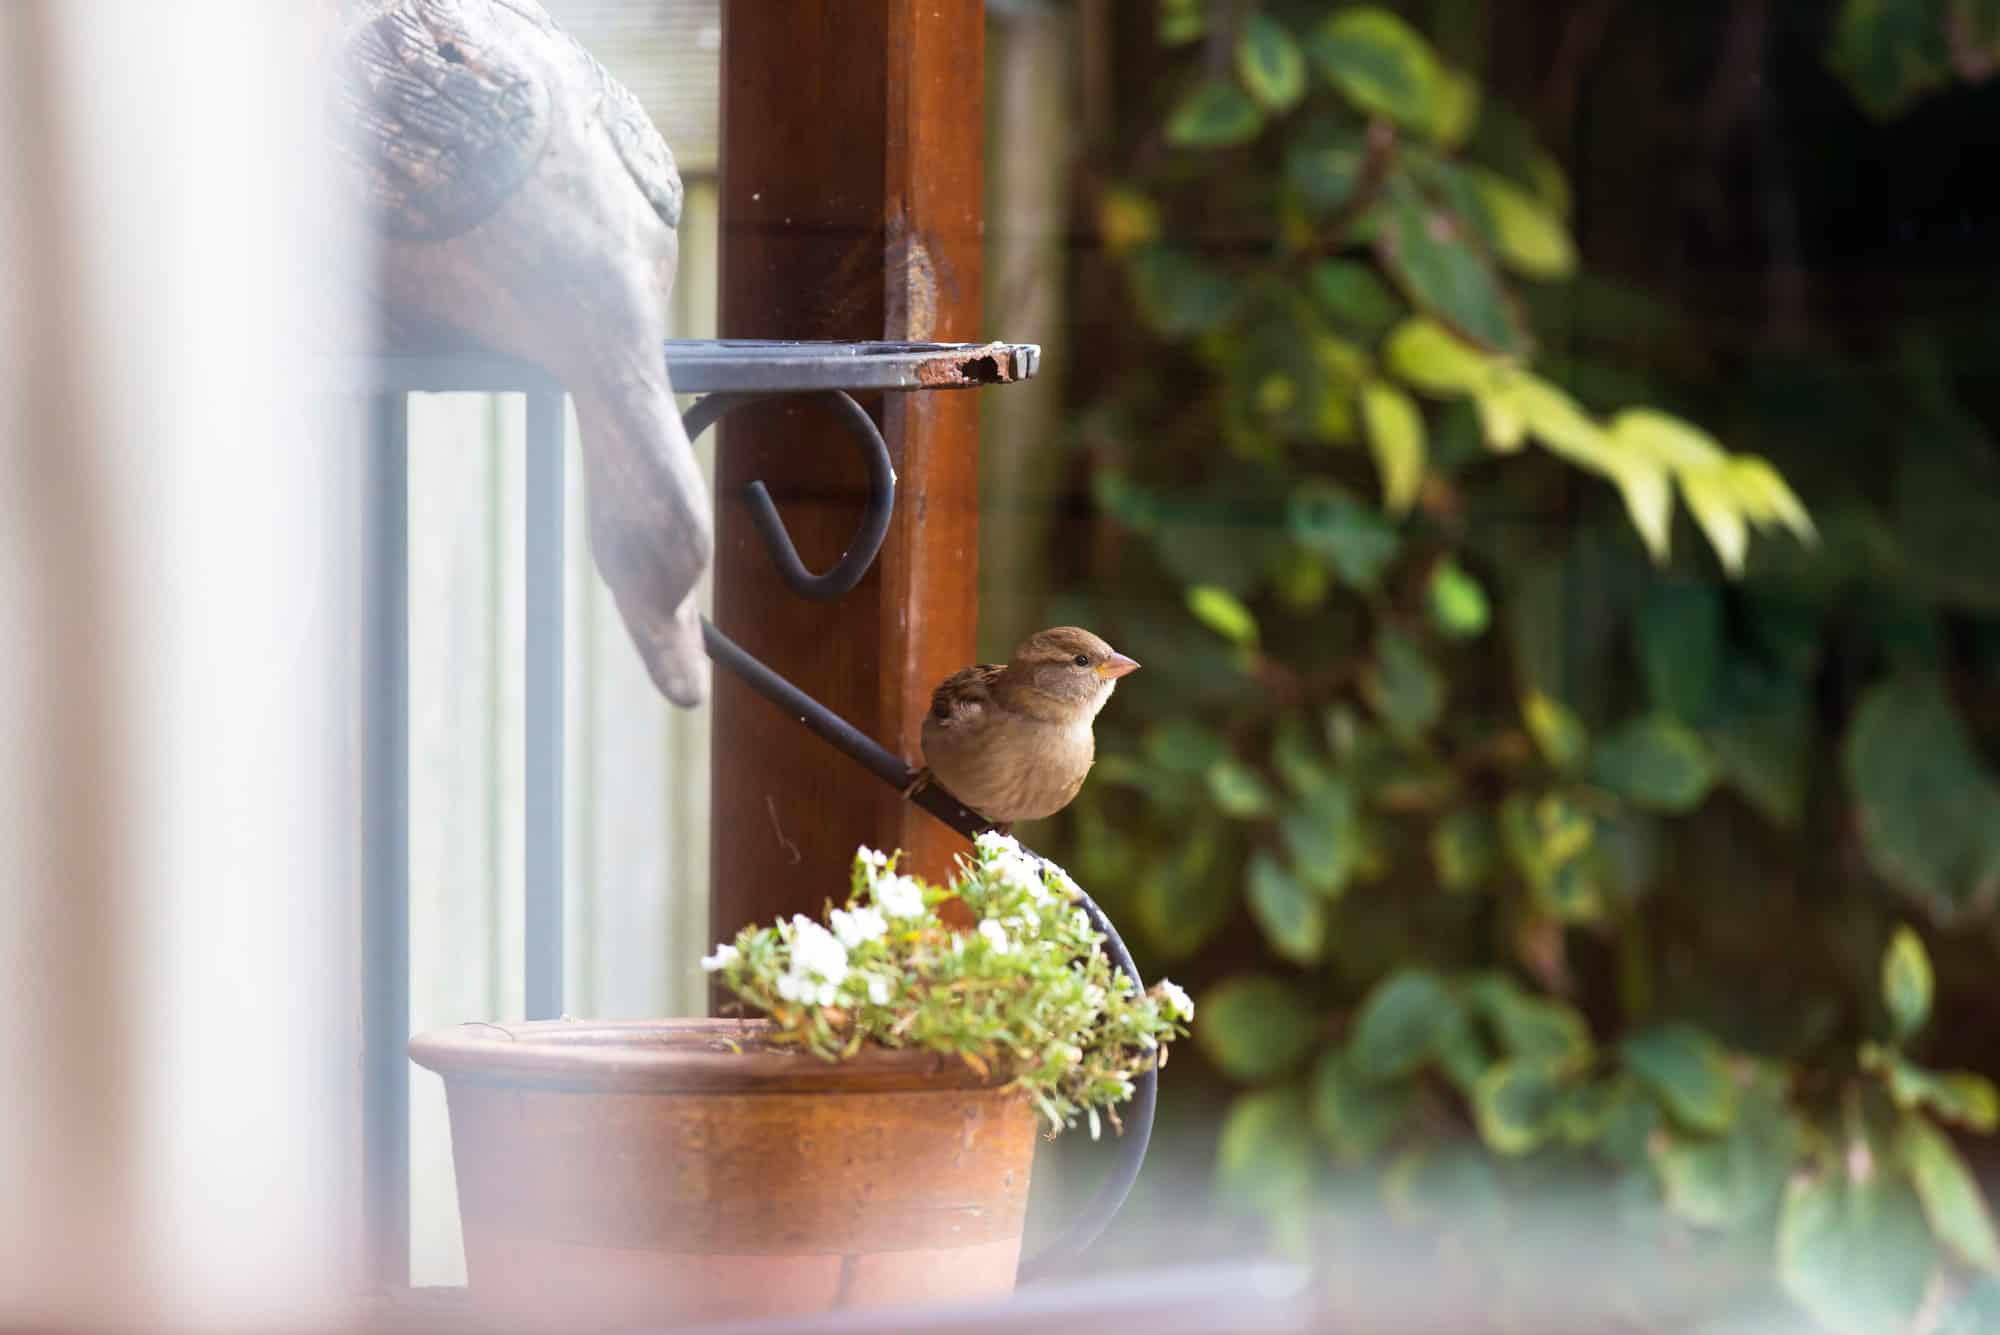 Jardines de aves en el patio trasero: ideas de plantas y paisajismo para atraer más aves